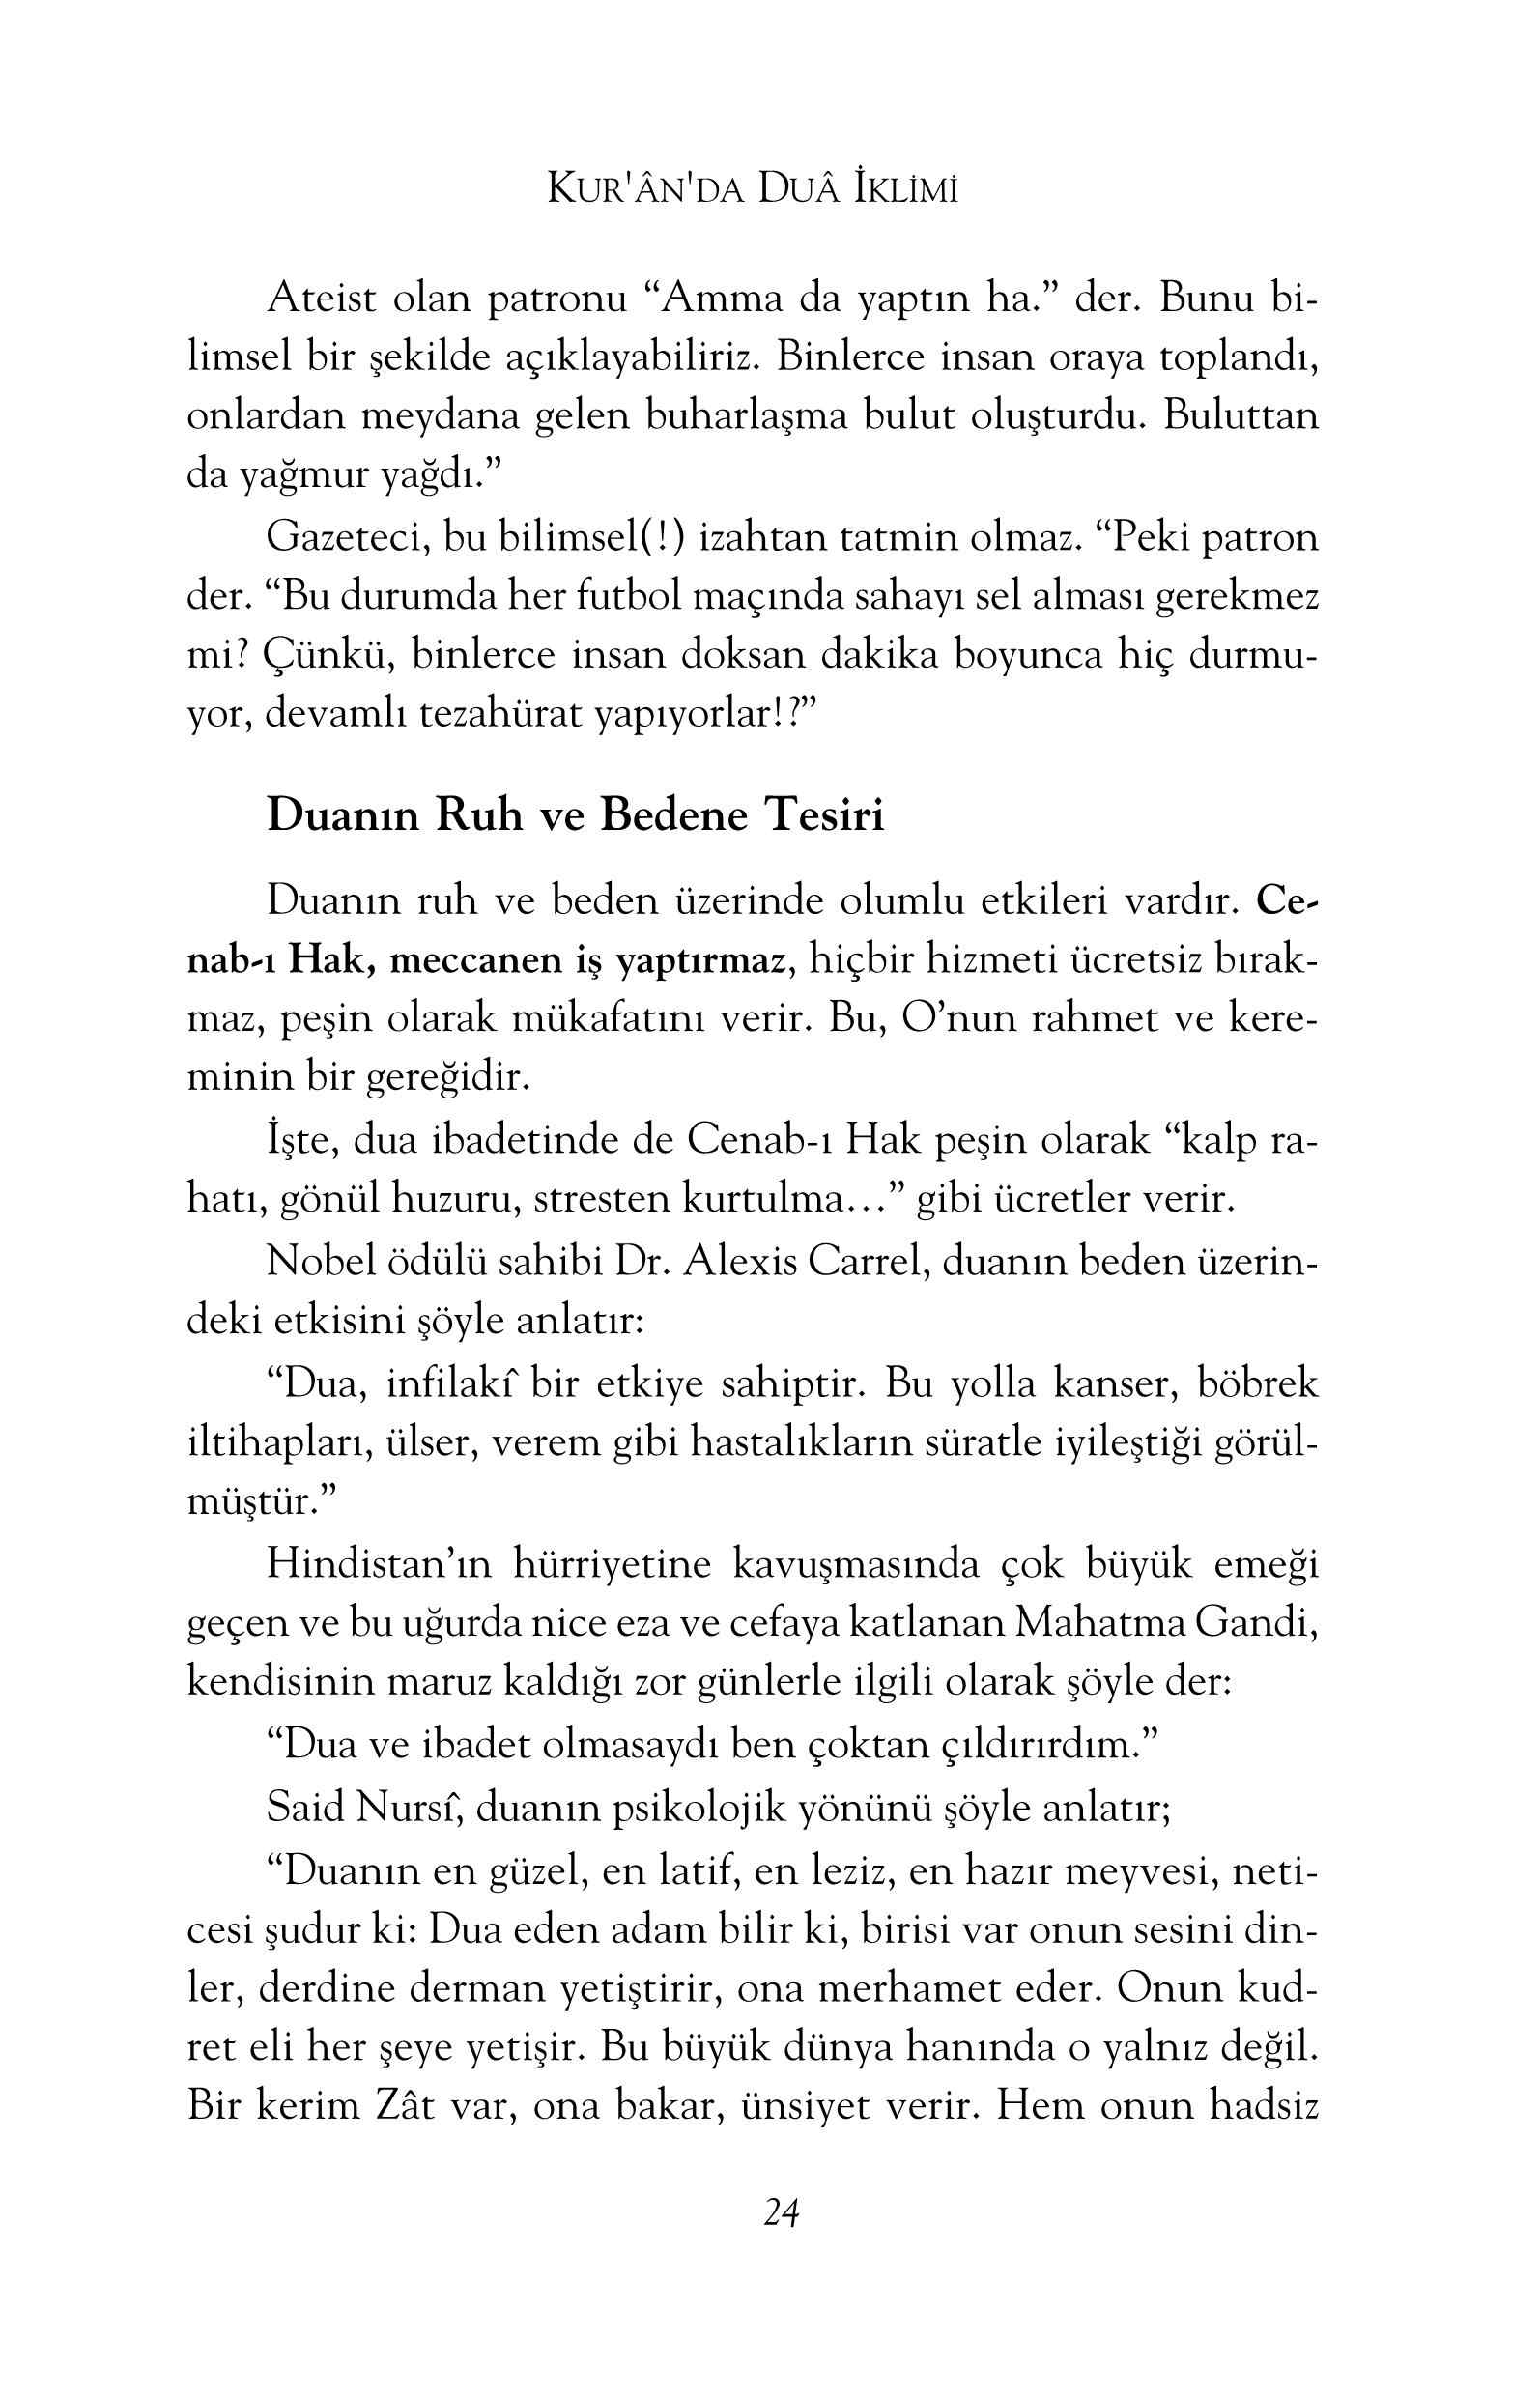 Sadi Eren - Kuranda Dua Iklimi (Kuranda Dua Ayetleri) - IsikAkademiY.pdf, 167-Sayfa 